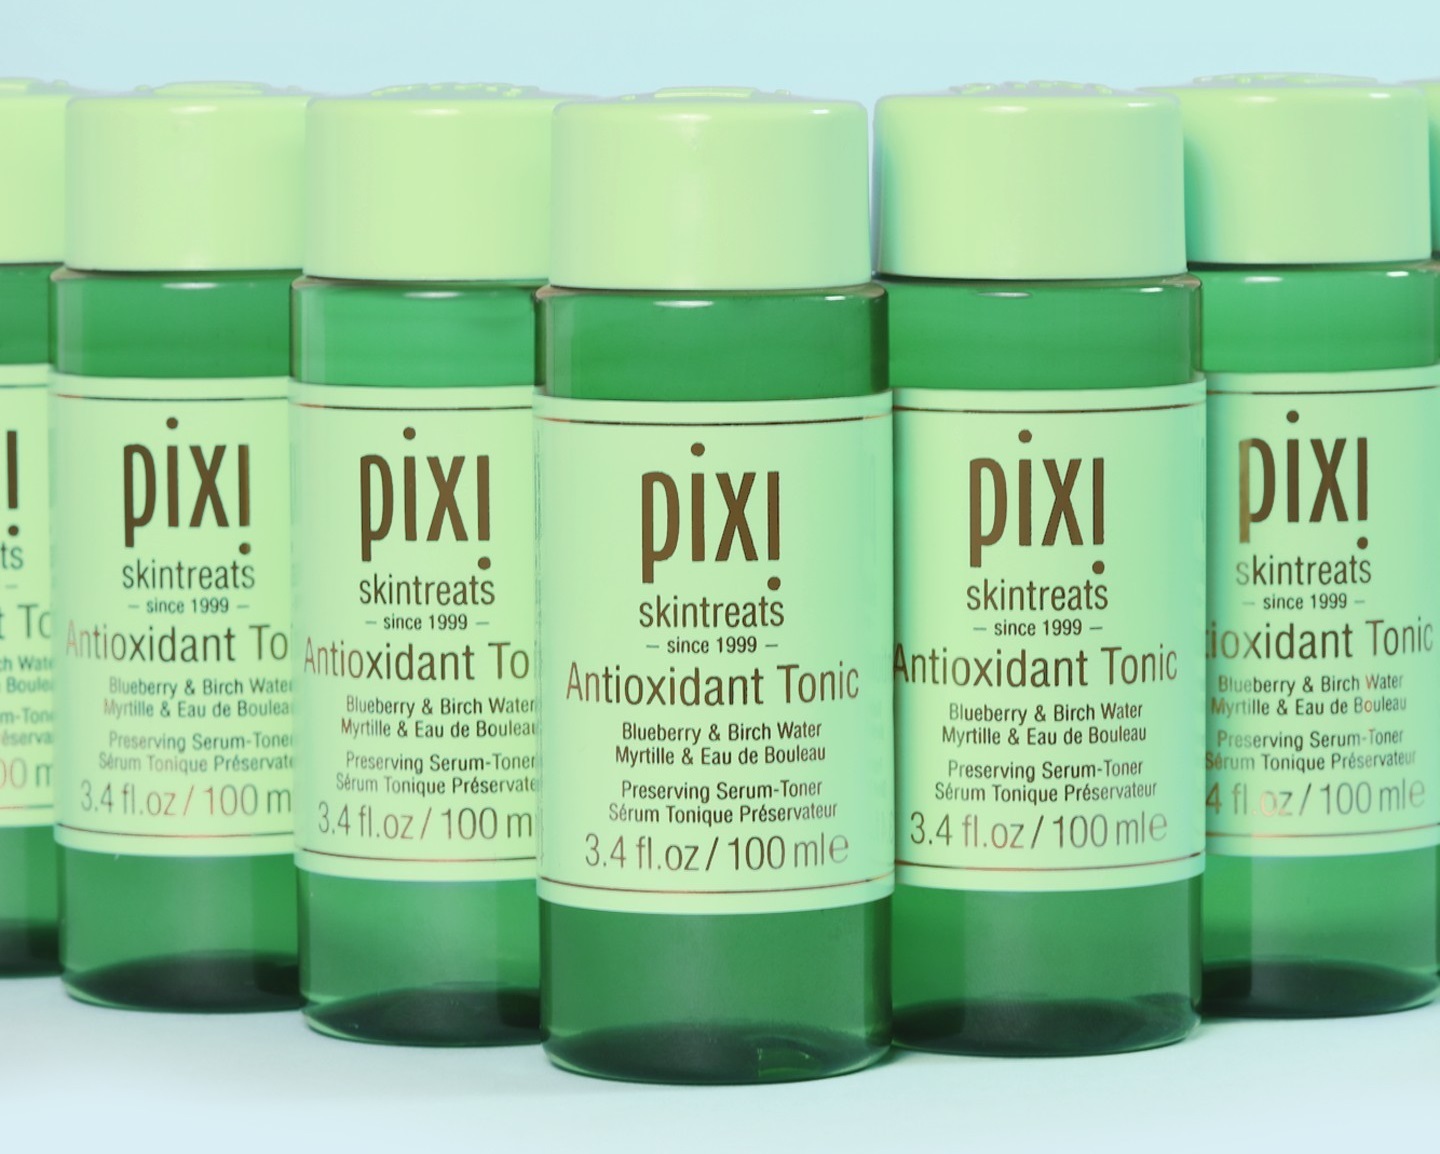 PIXI Antioxidant Tonic